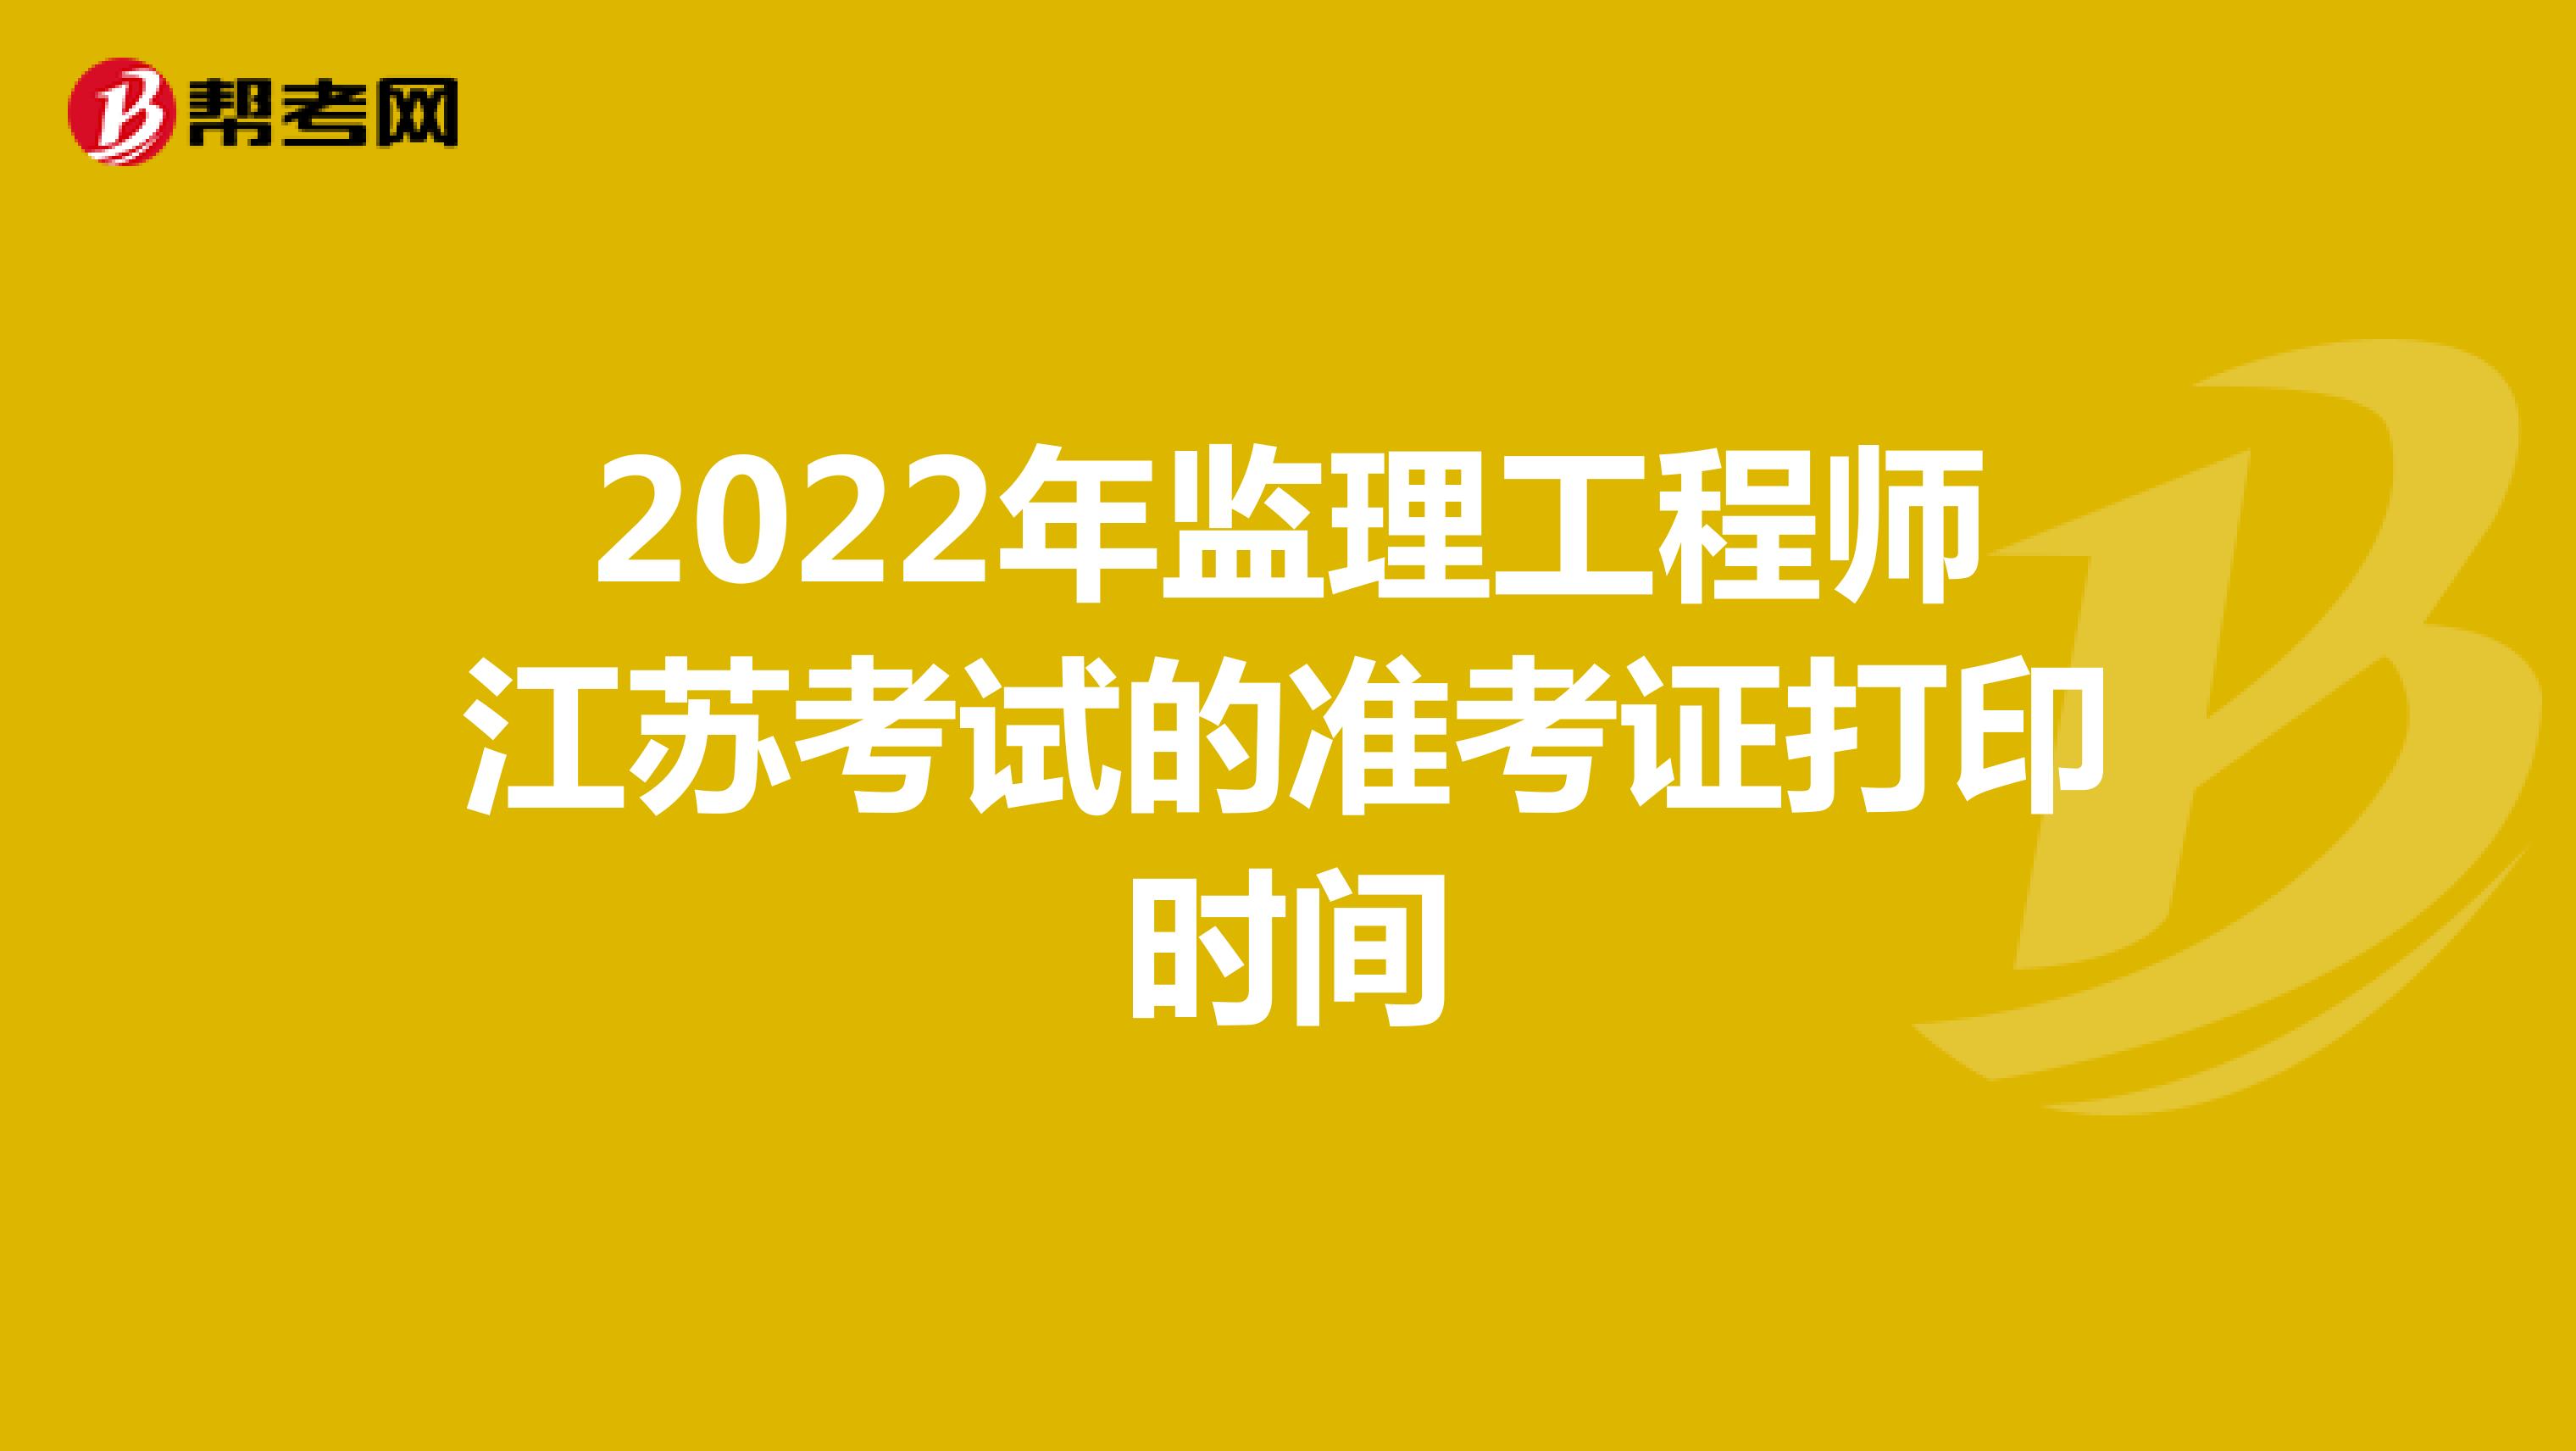 2022年监理工程师江苏考试的准考证打印时间